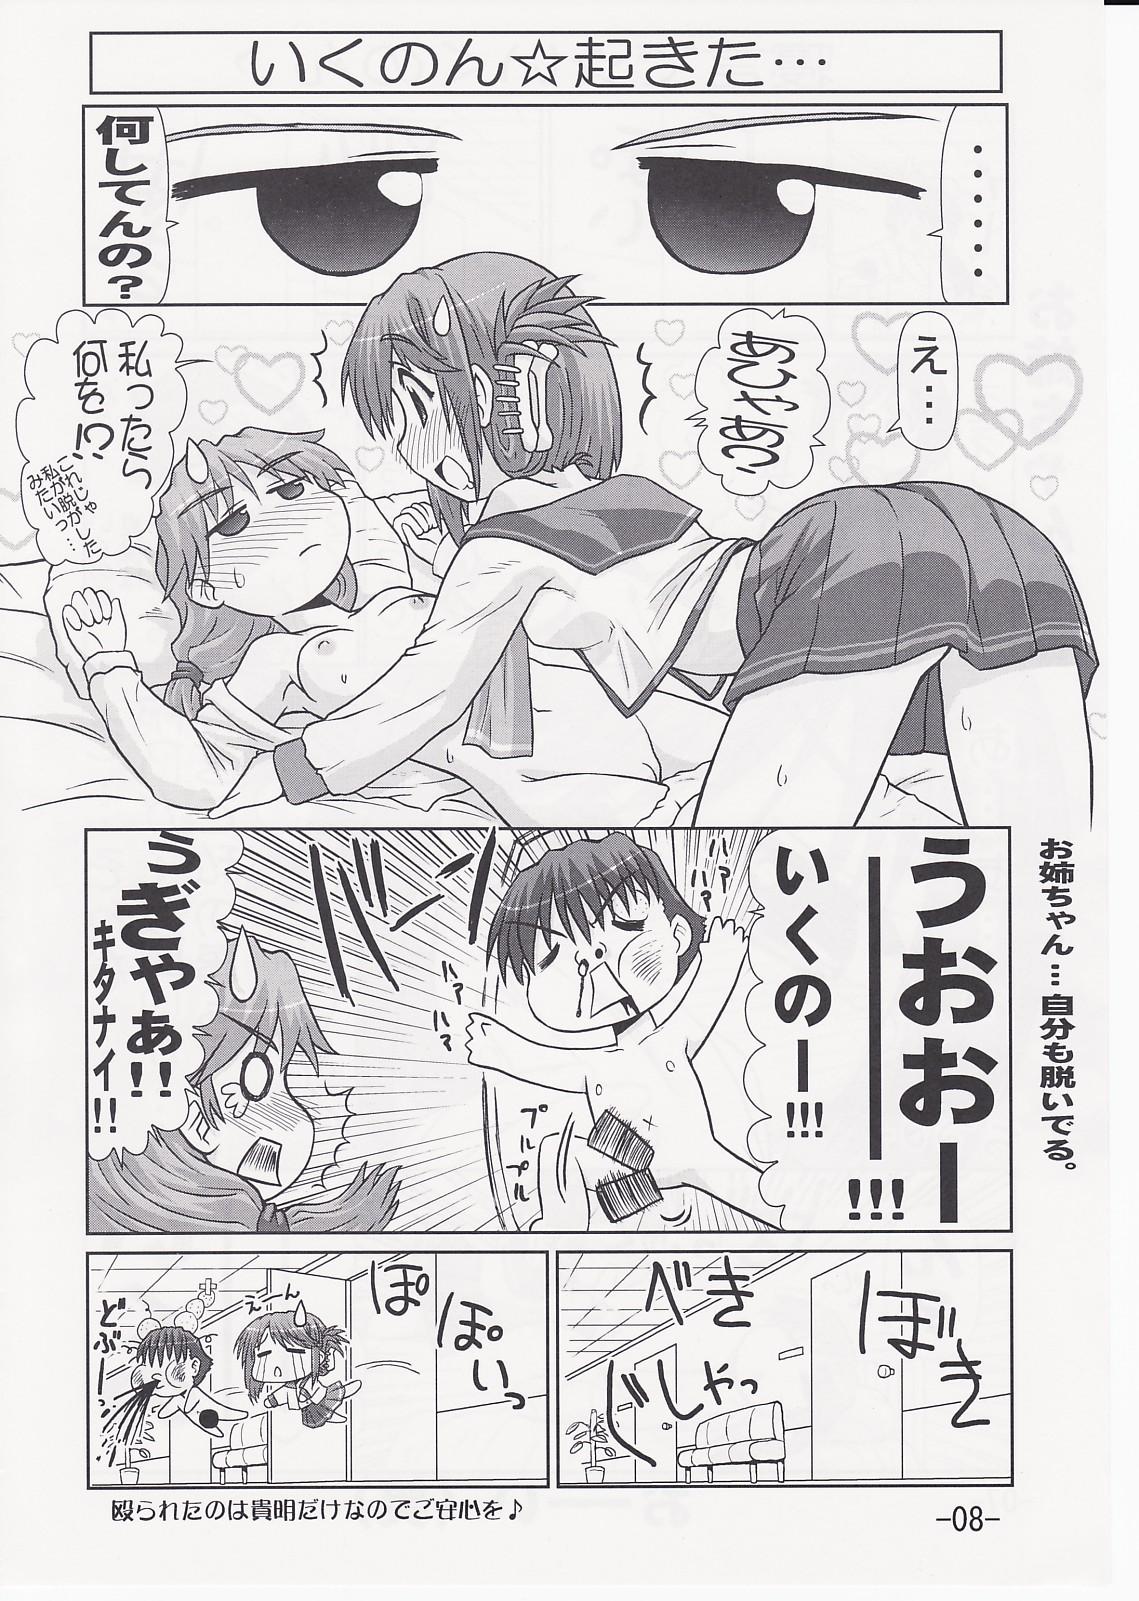 British Ikunon Manga 2 - Toheart2 Blow Jobs - Page 7